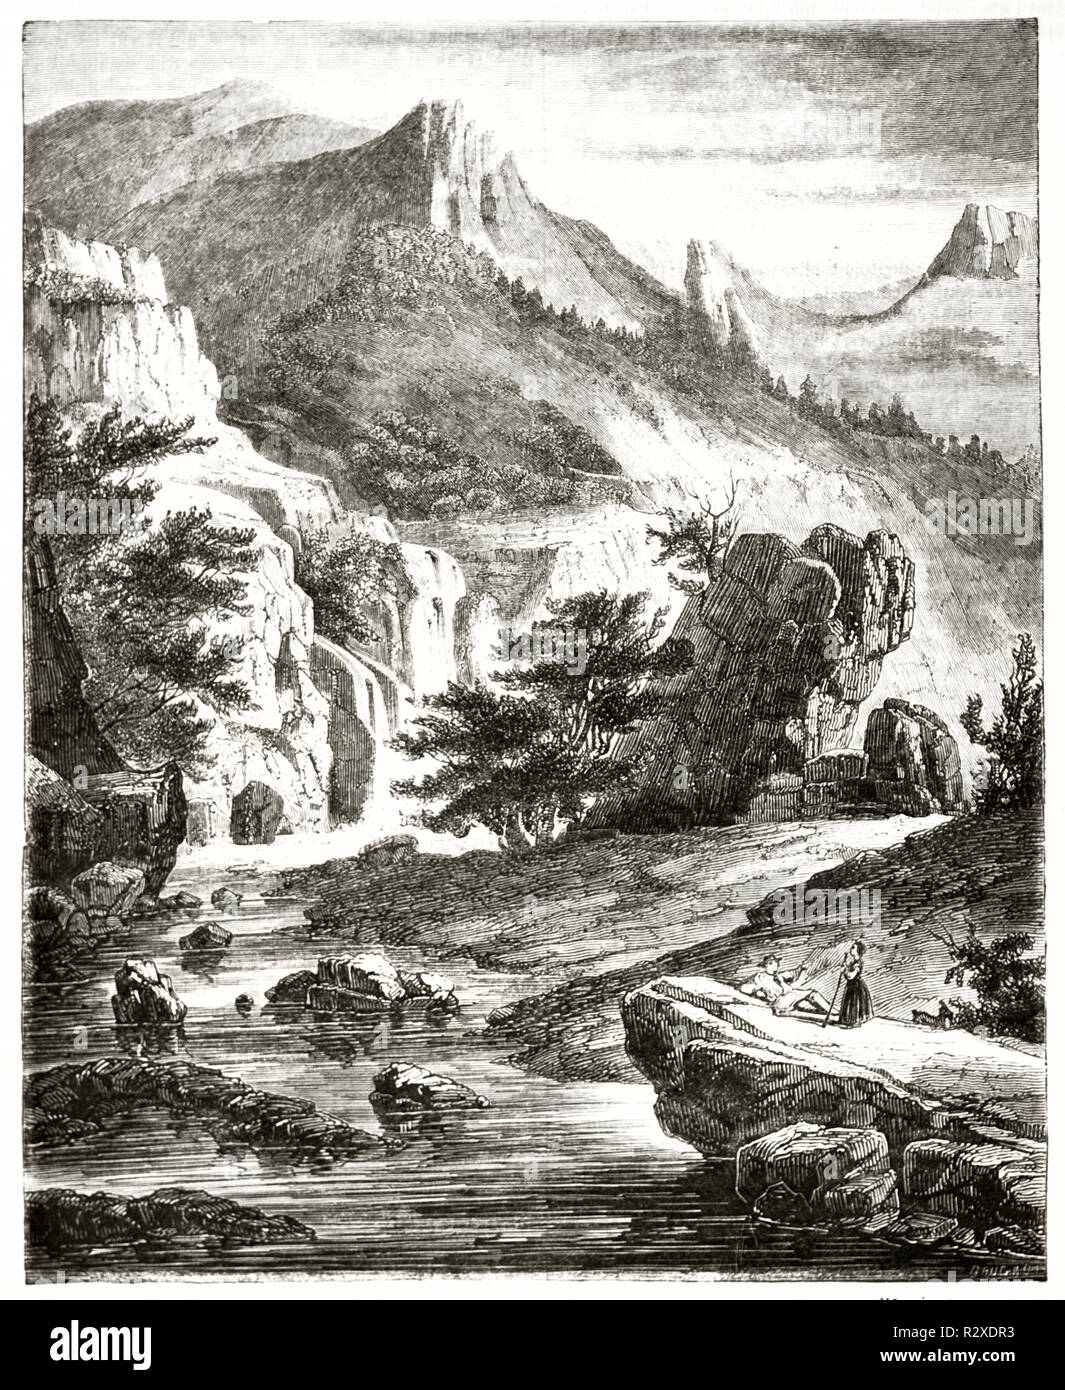 Vecchio vista della valle di Chaudefour, Francia. Da autore non identificato, publ. su Magasin pittoresco, Parigi, 1846 Foto Stock